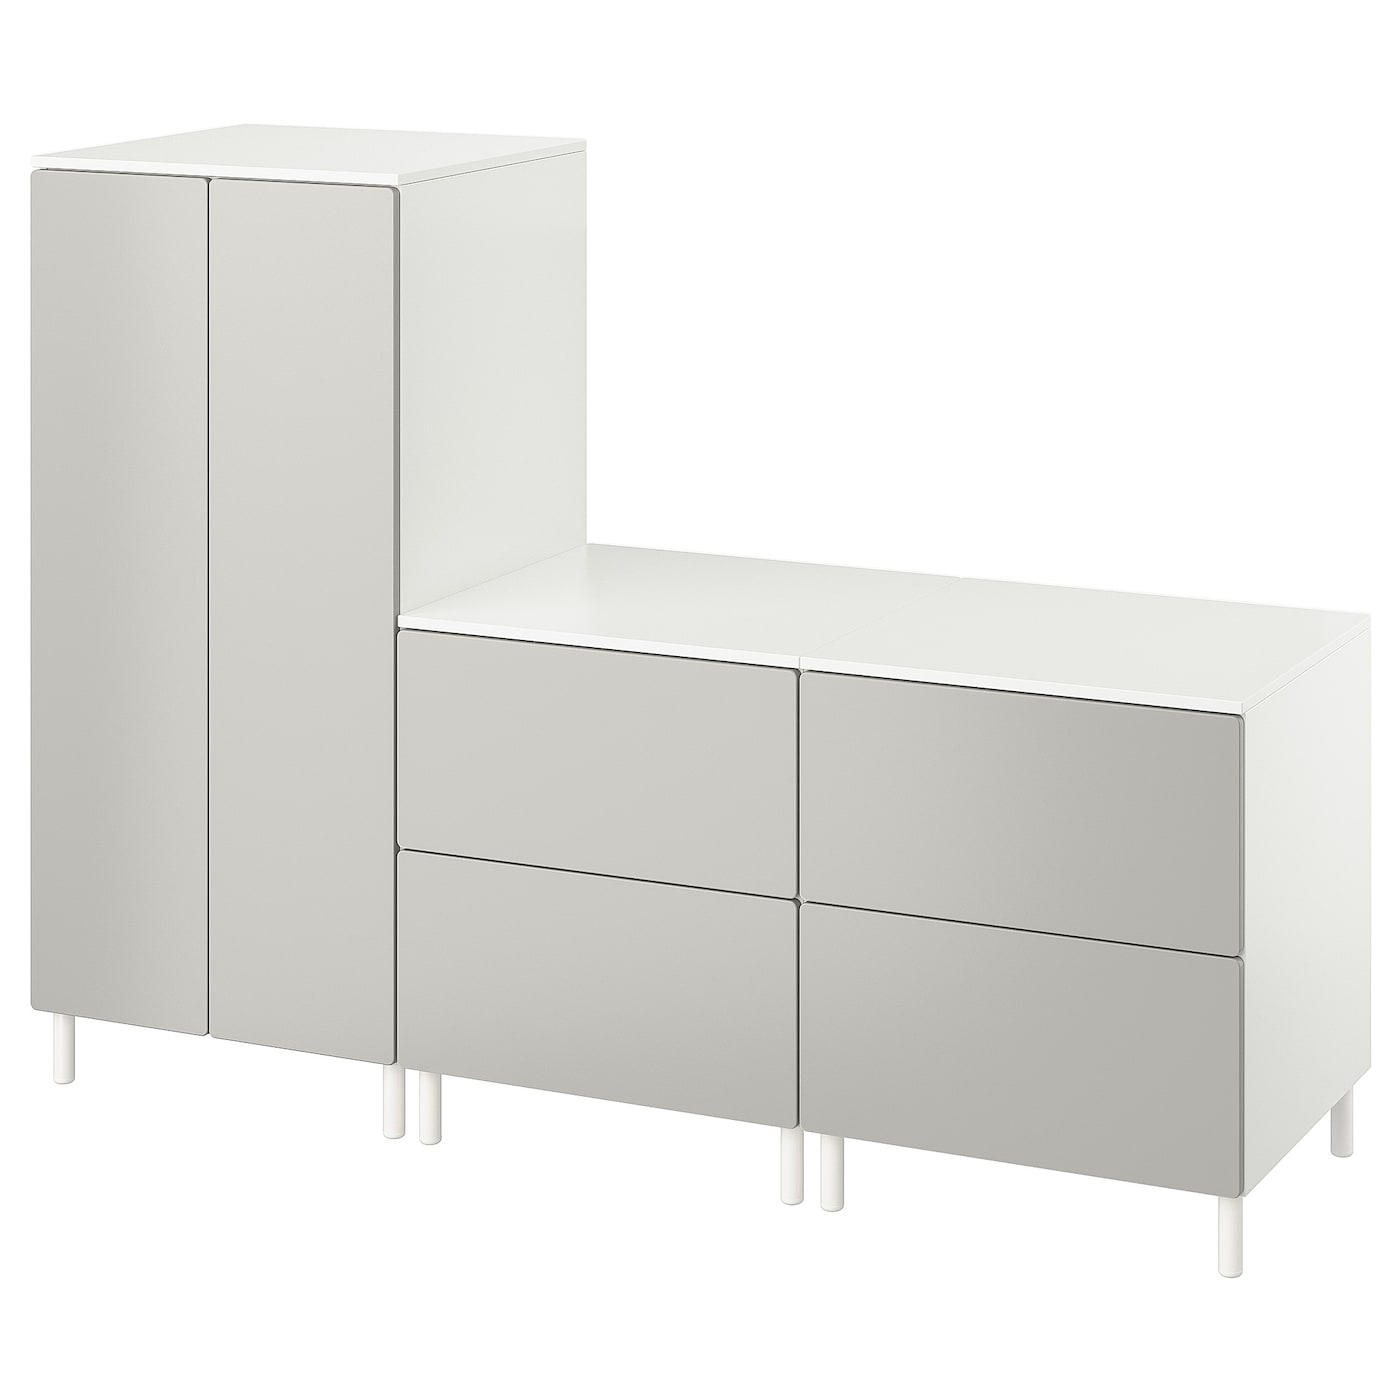 Шкаф - PLATSA/ SMÅSTAD / SMАSTAD  IKEA/ ПЛАТСА/СМОСТАД  ИКЕА, 180x57x133 см, белый/серый